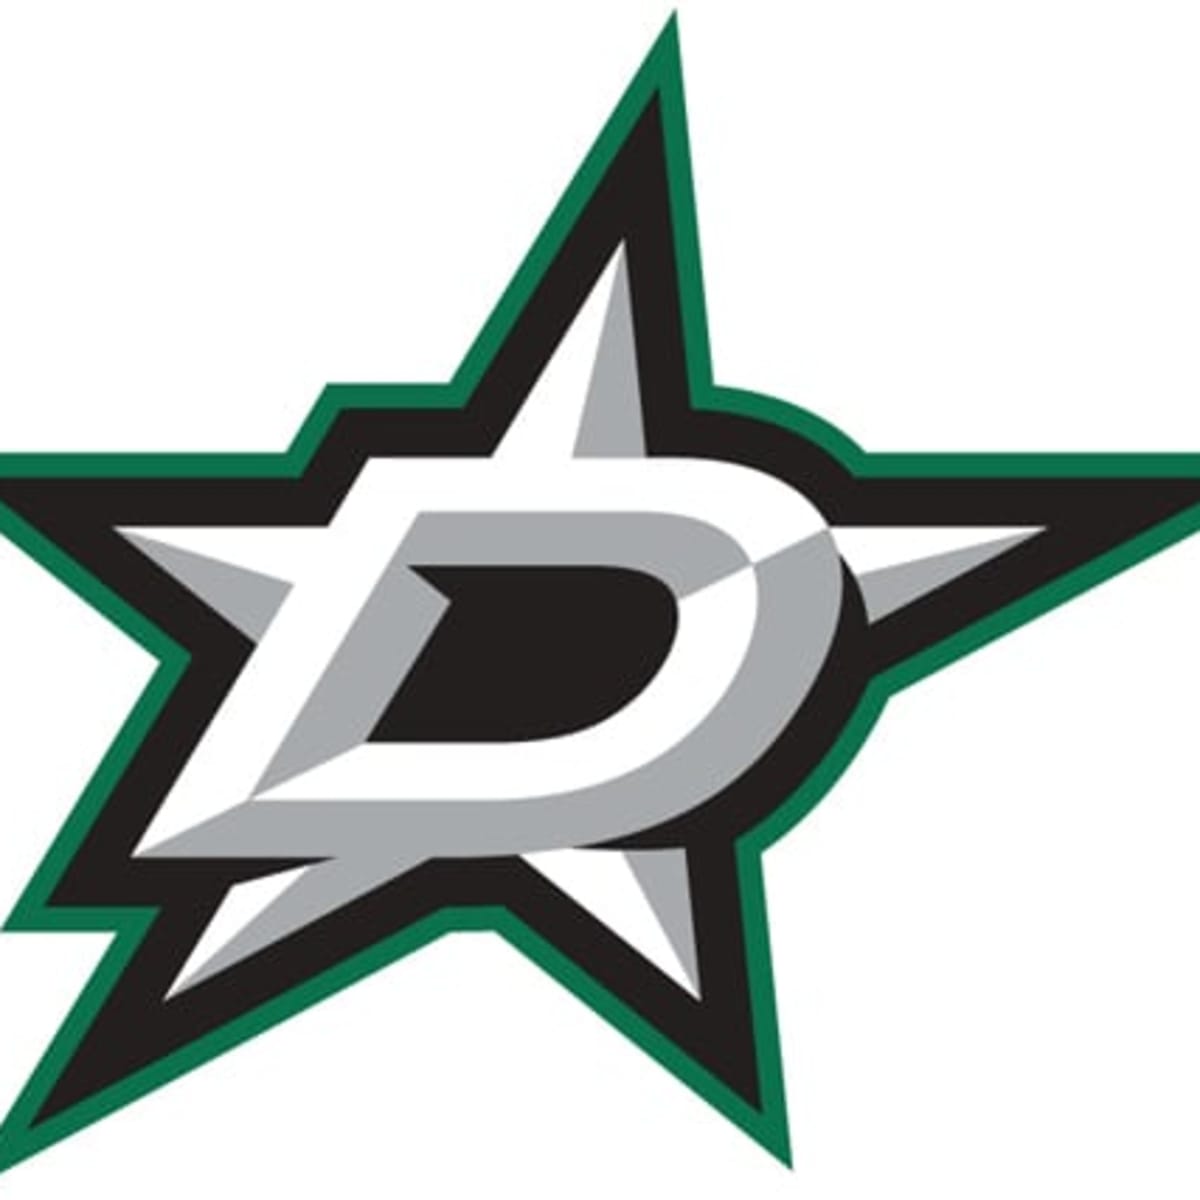 ECHL All-Star Game Primary Logo - ECHL (ECHL) - Chris Creamer's